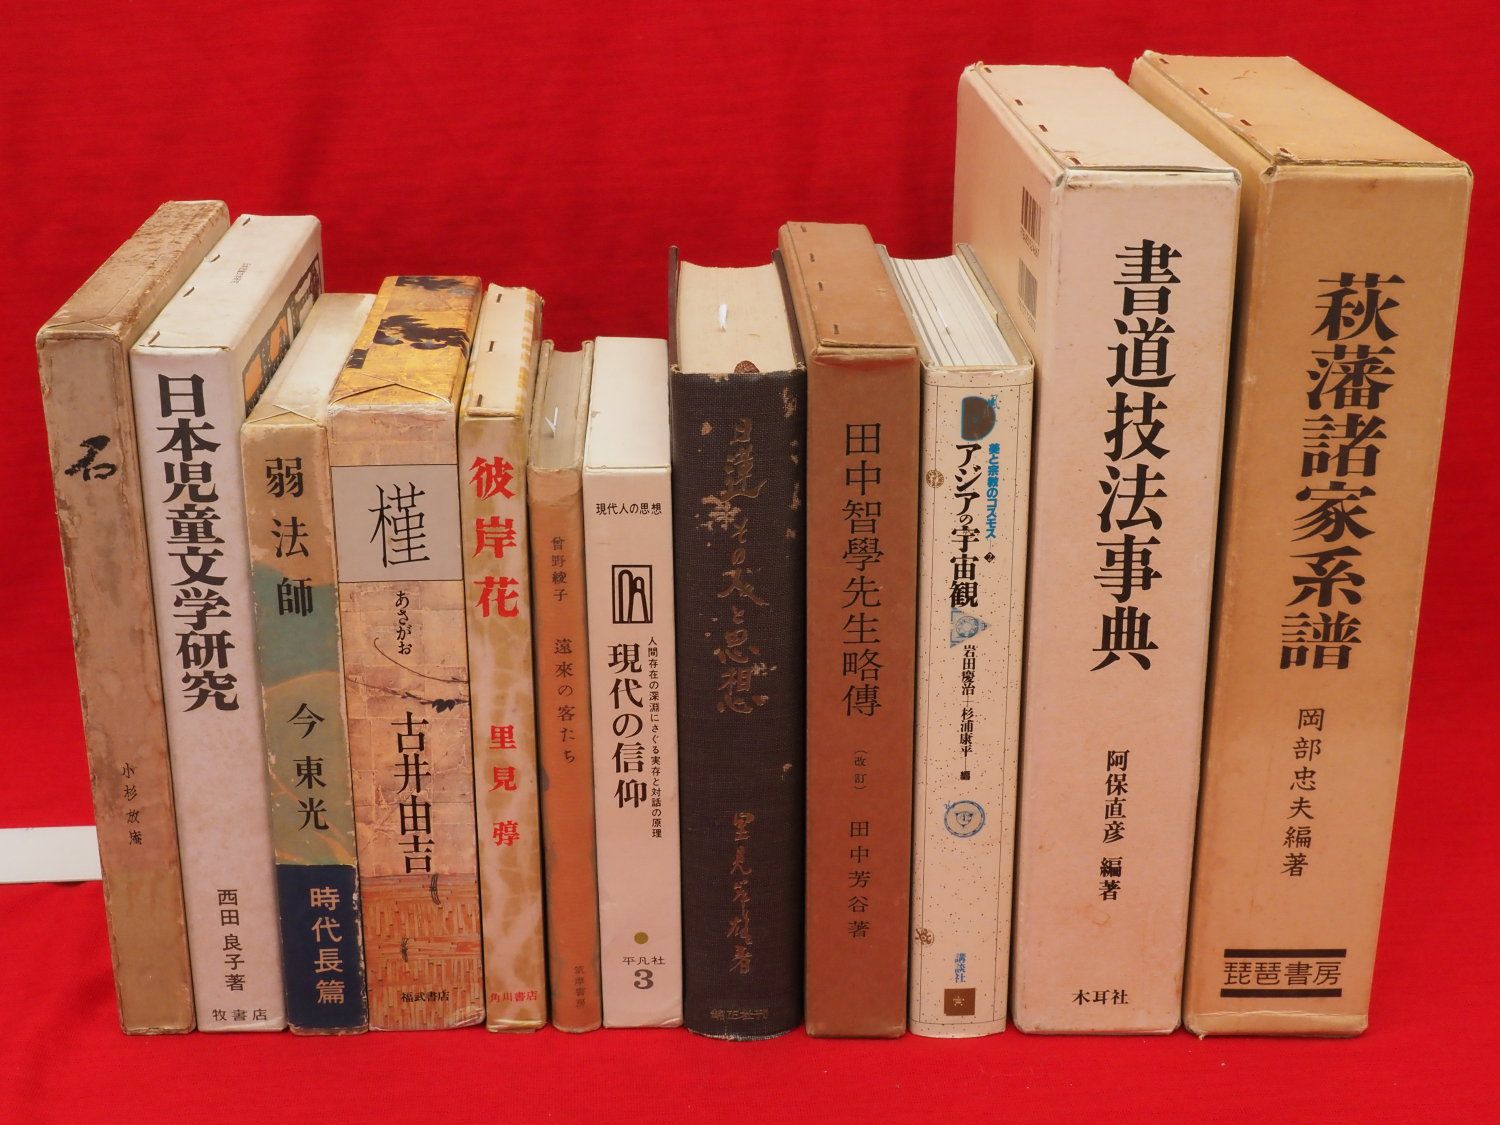 近世秋田の学問と文化 6冊組』など、秋田県郷土史ほか計72点新入荷商品追加しました | 古ほんや板澤書房ブログ